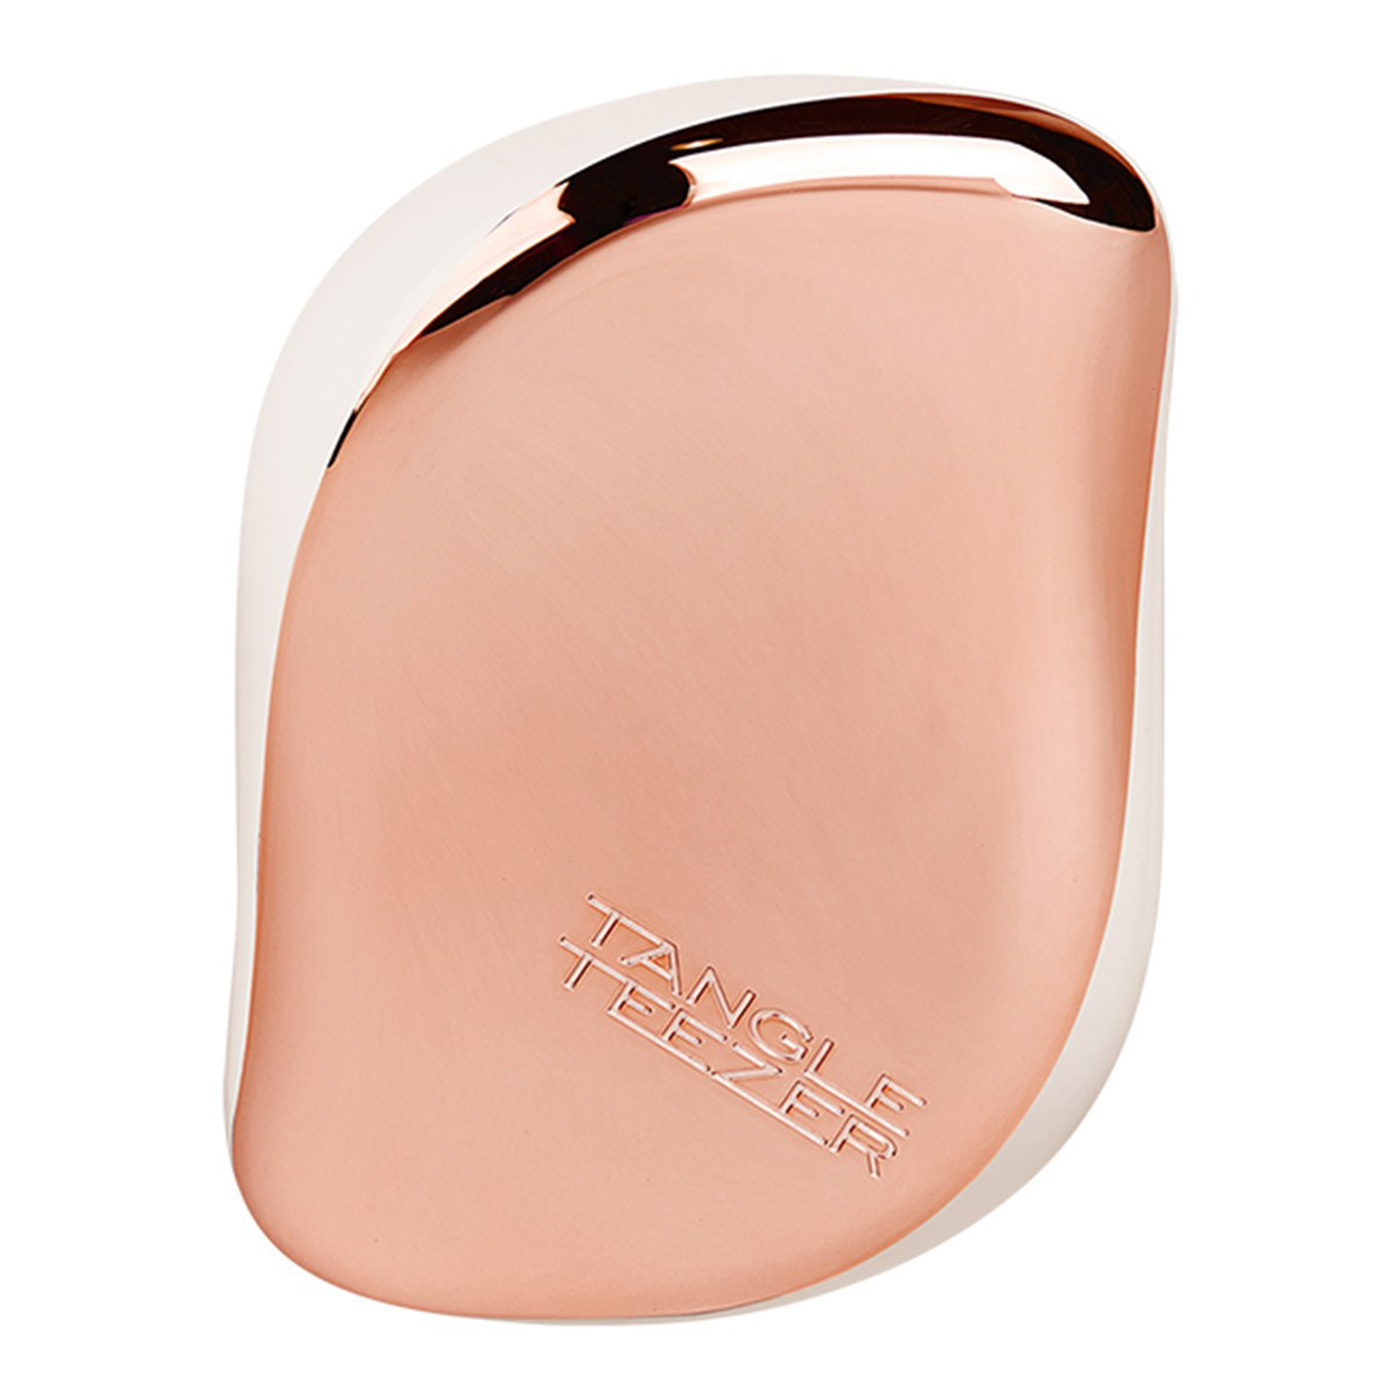  Tangle Teezer Compact Styler Saç Fırçası  | Rose Gold